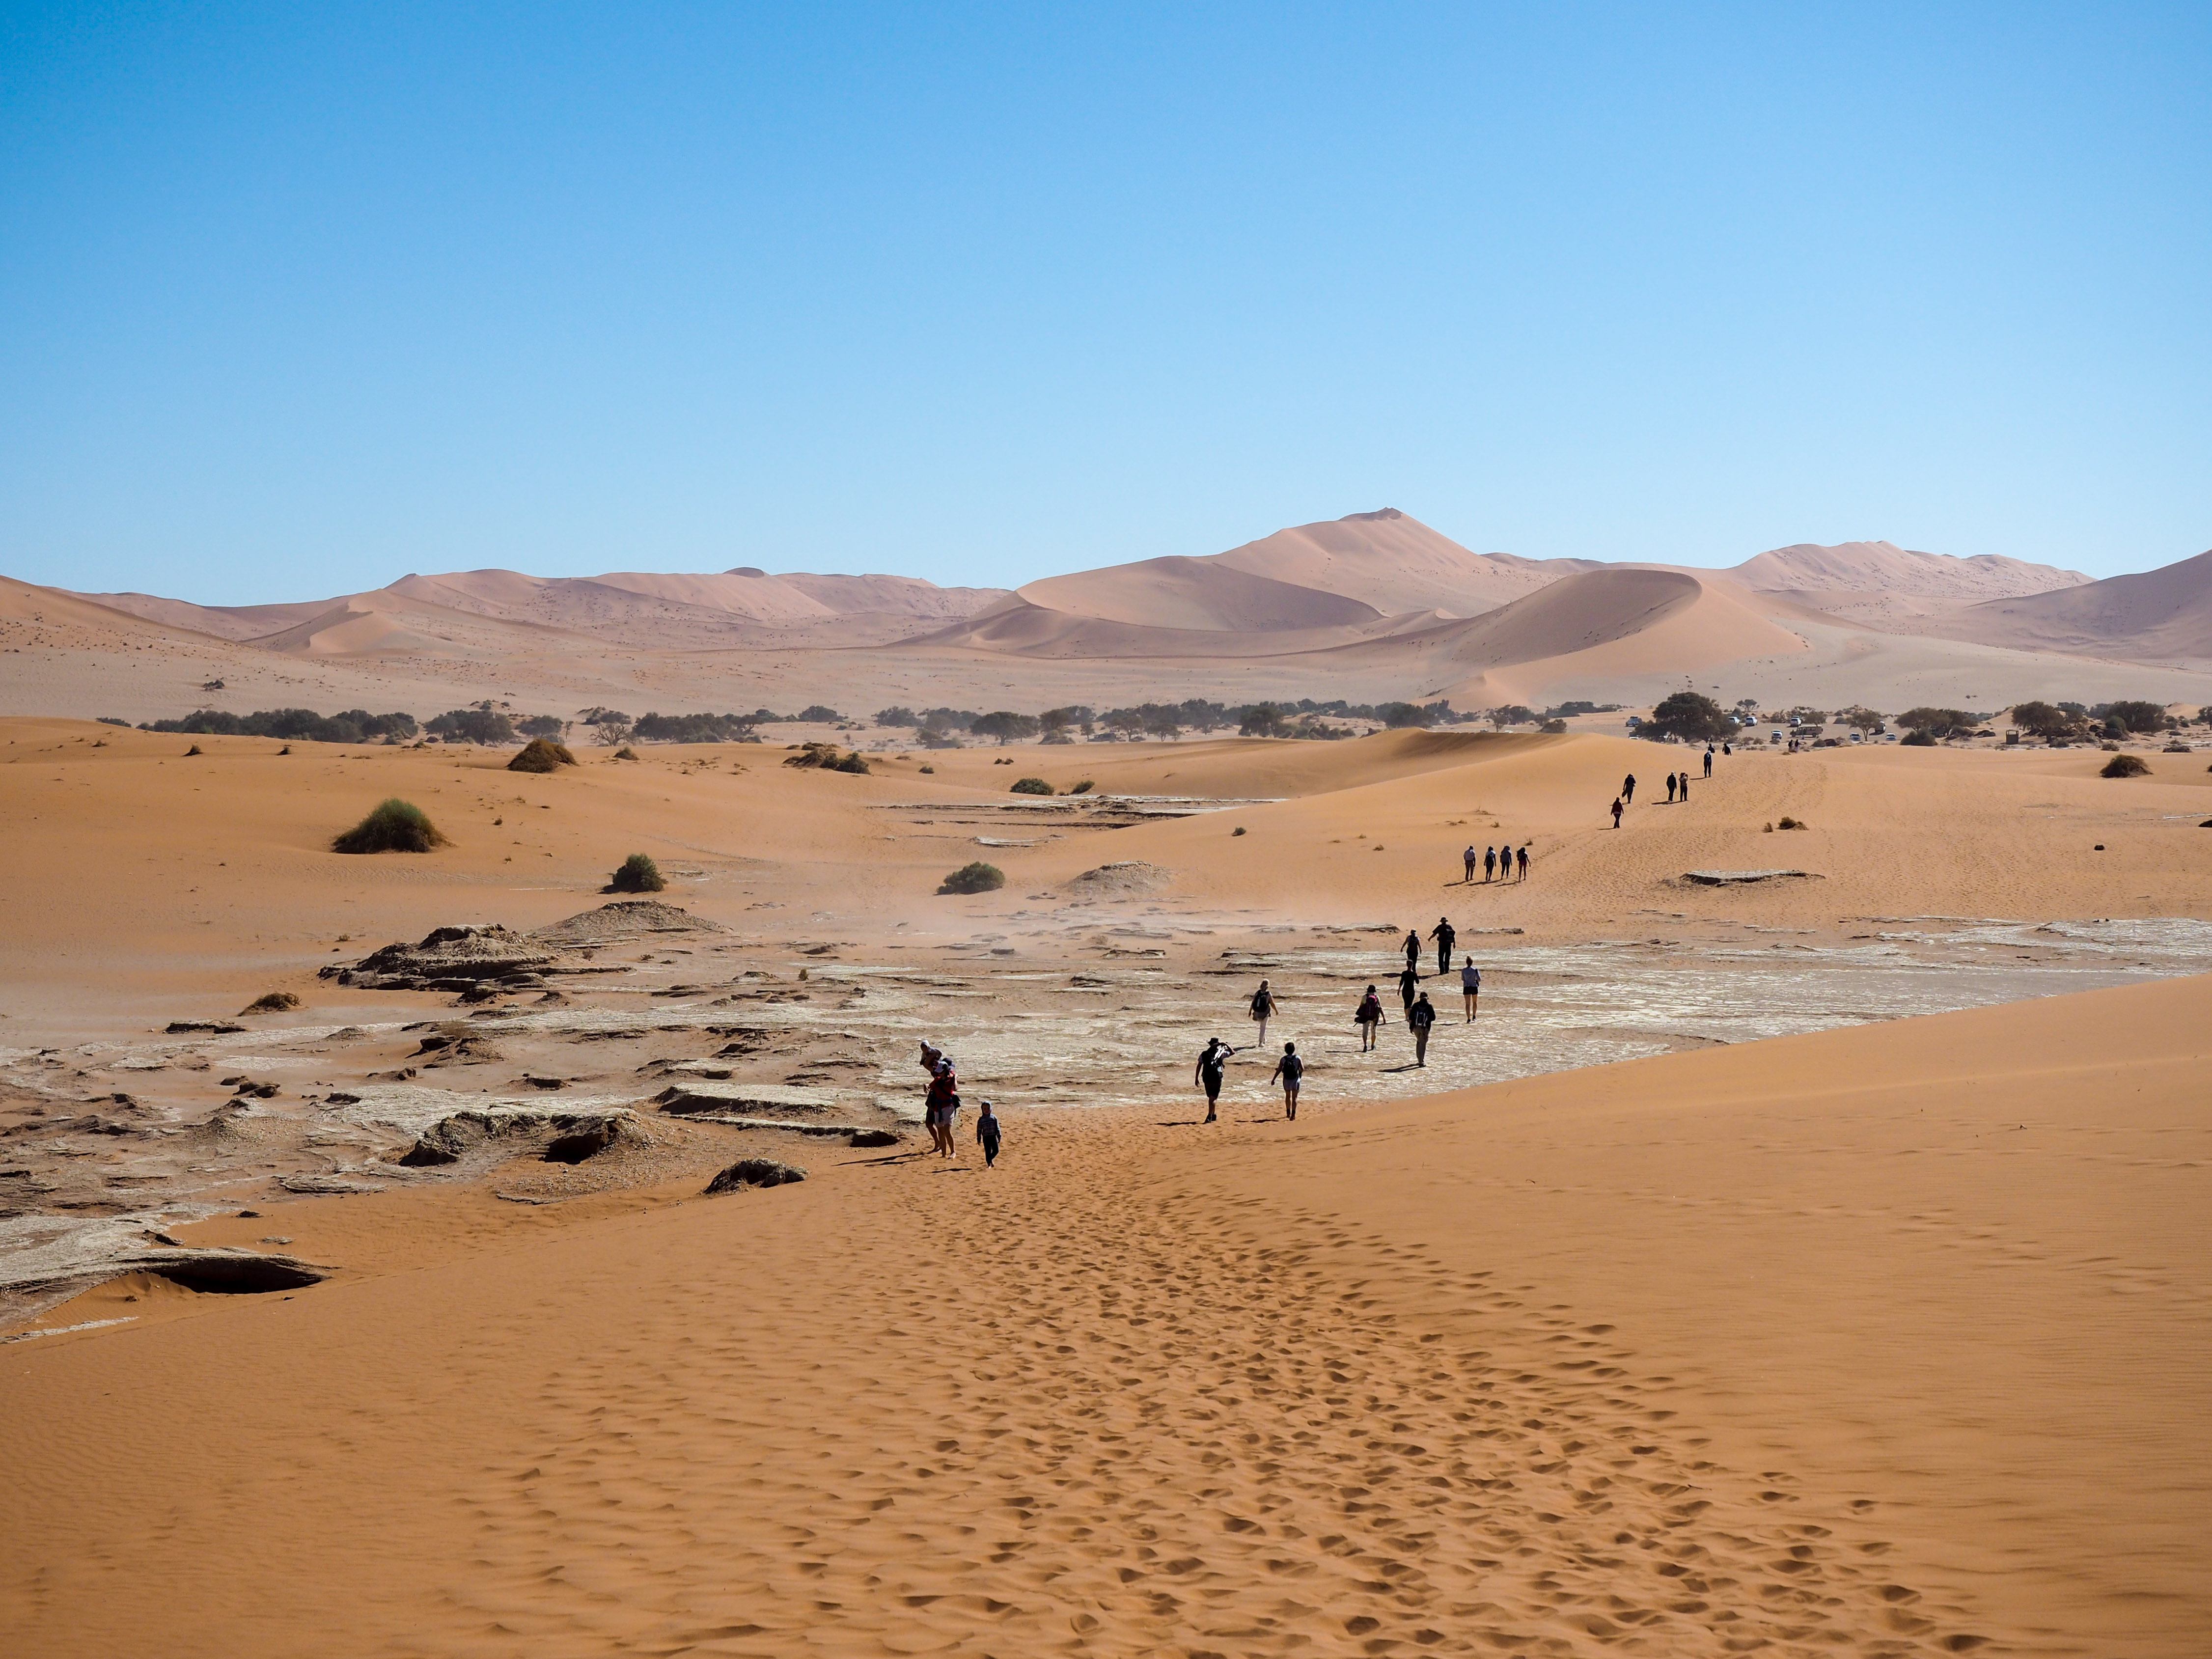 Namib Desert in Africa